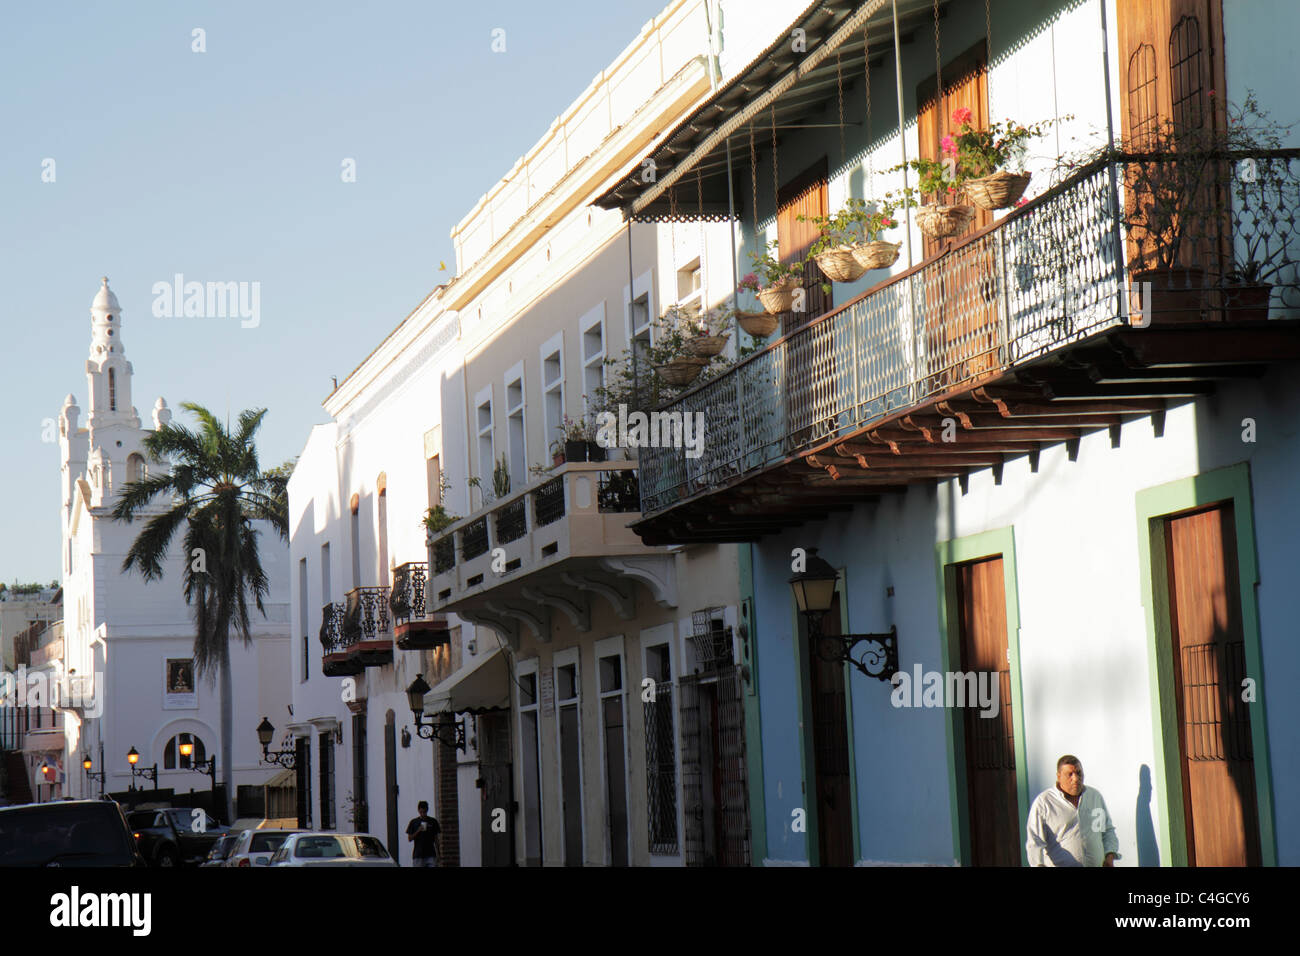 Santo Domingo República Dominicana,Ciudad Colonia Zona Colonial,Calle Juan Pablo Duarte,barrio,edificio,arquitectura colonial,balcón,hierro forjado Foto de stock